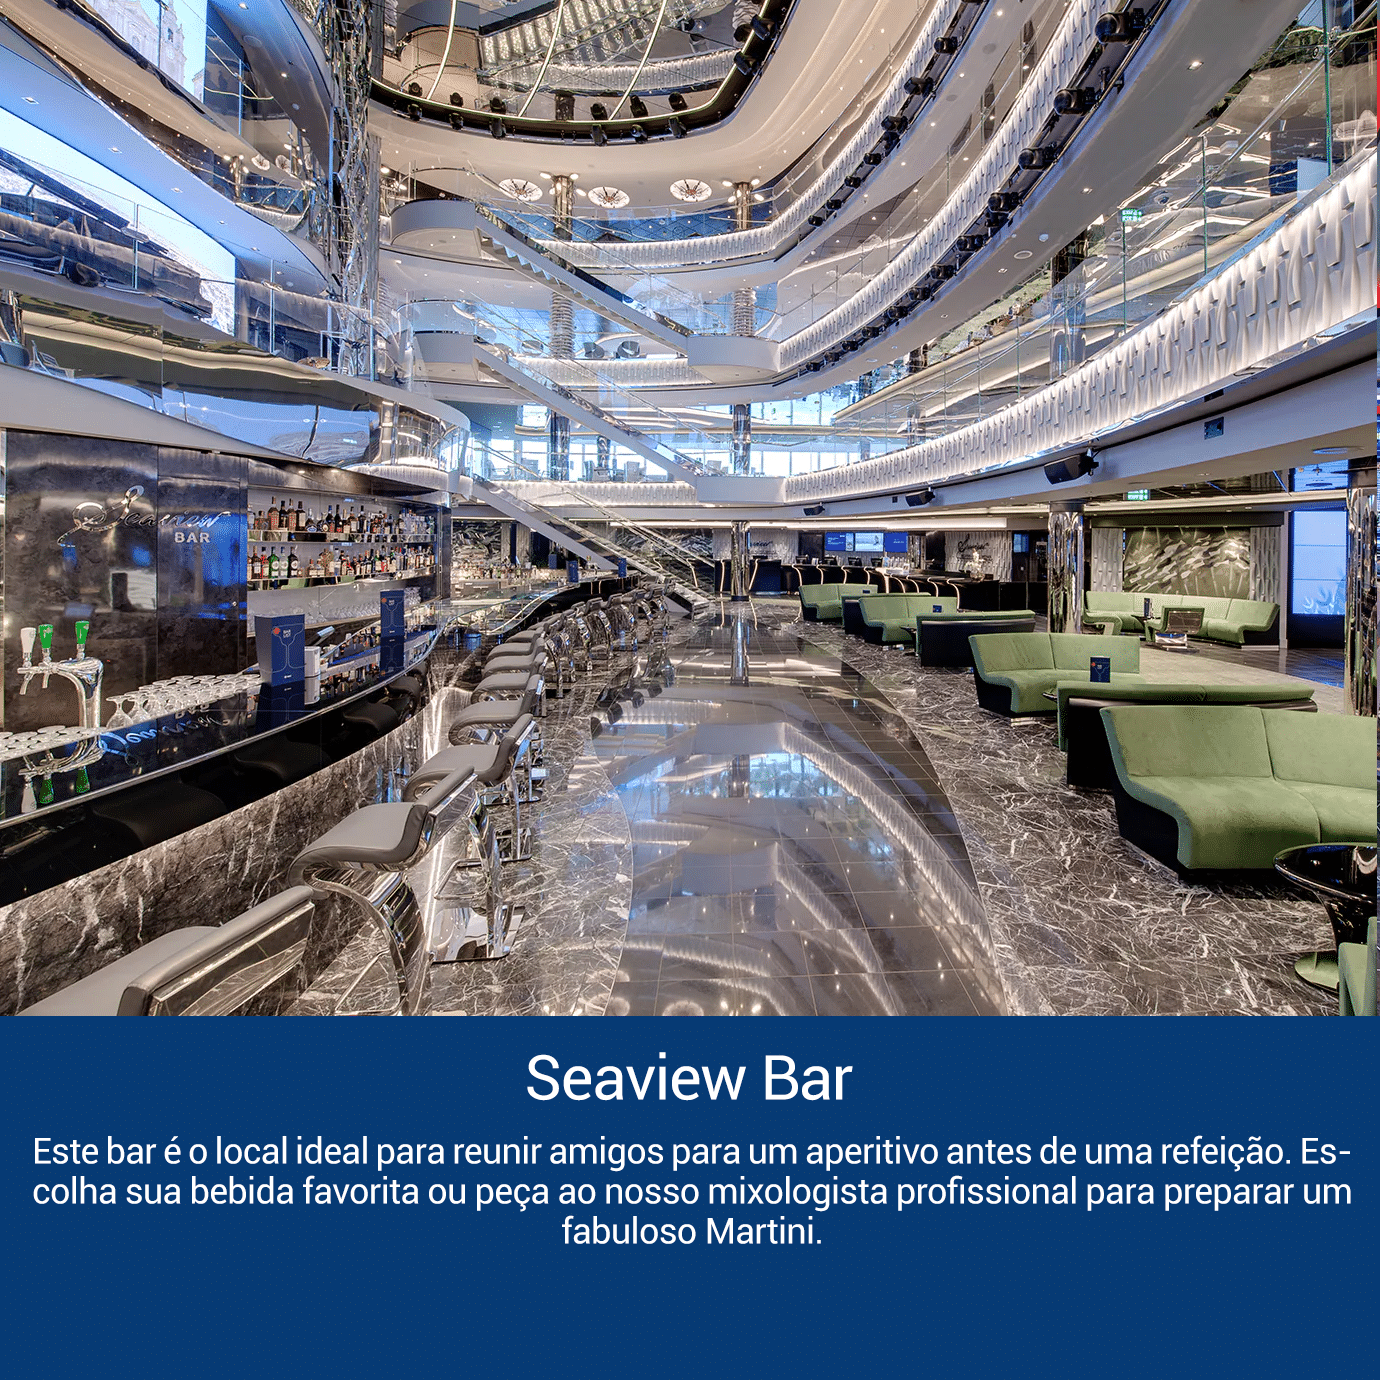 Seaview Bar